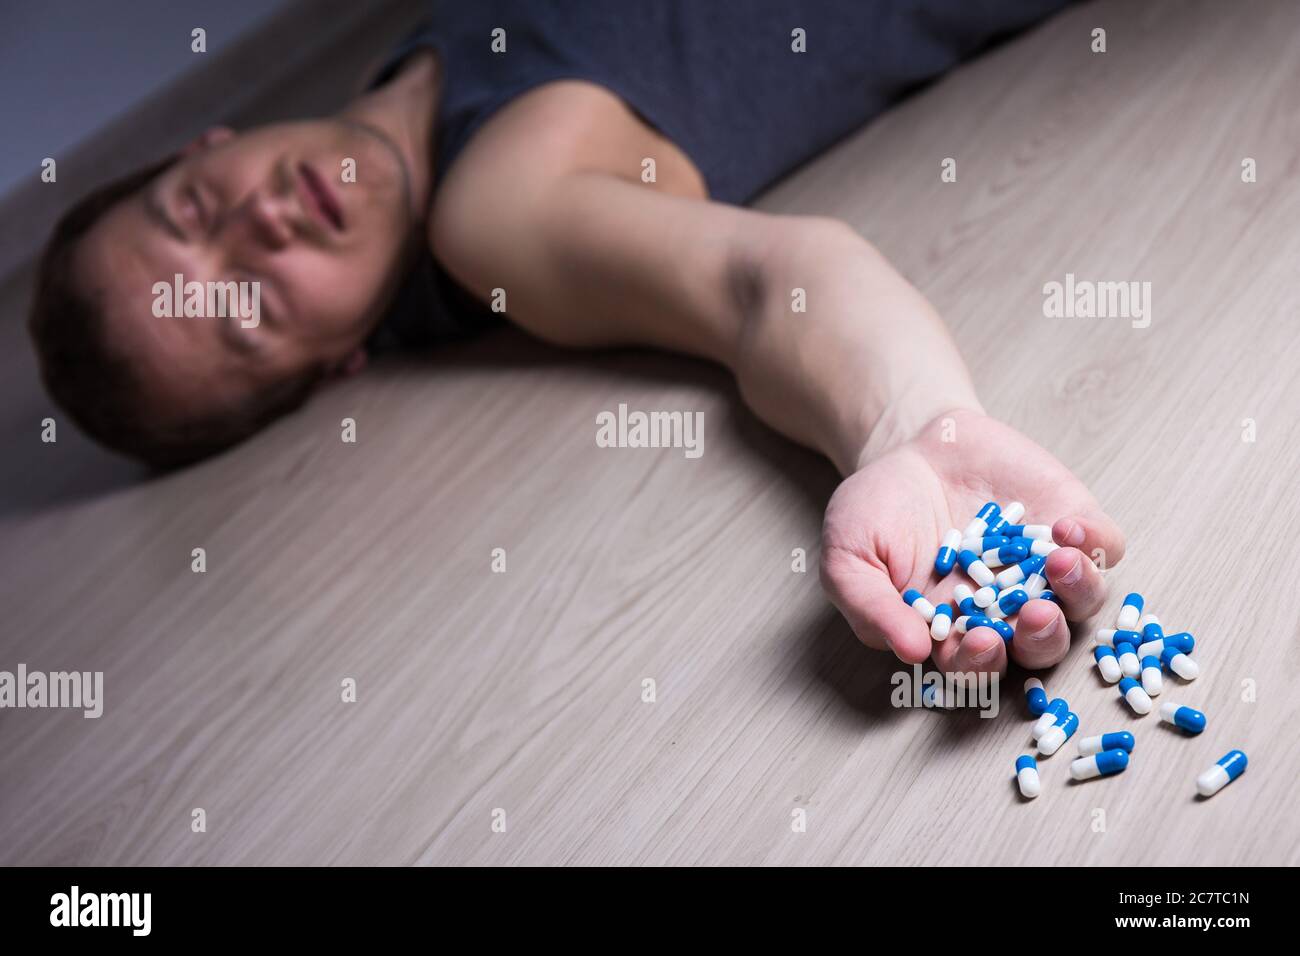 Überdosierung oder Selbstmord - junger stoned Mann mit Pillen auf dem Boden liegen Stockfoto